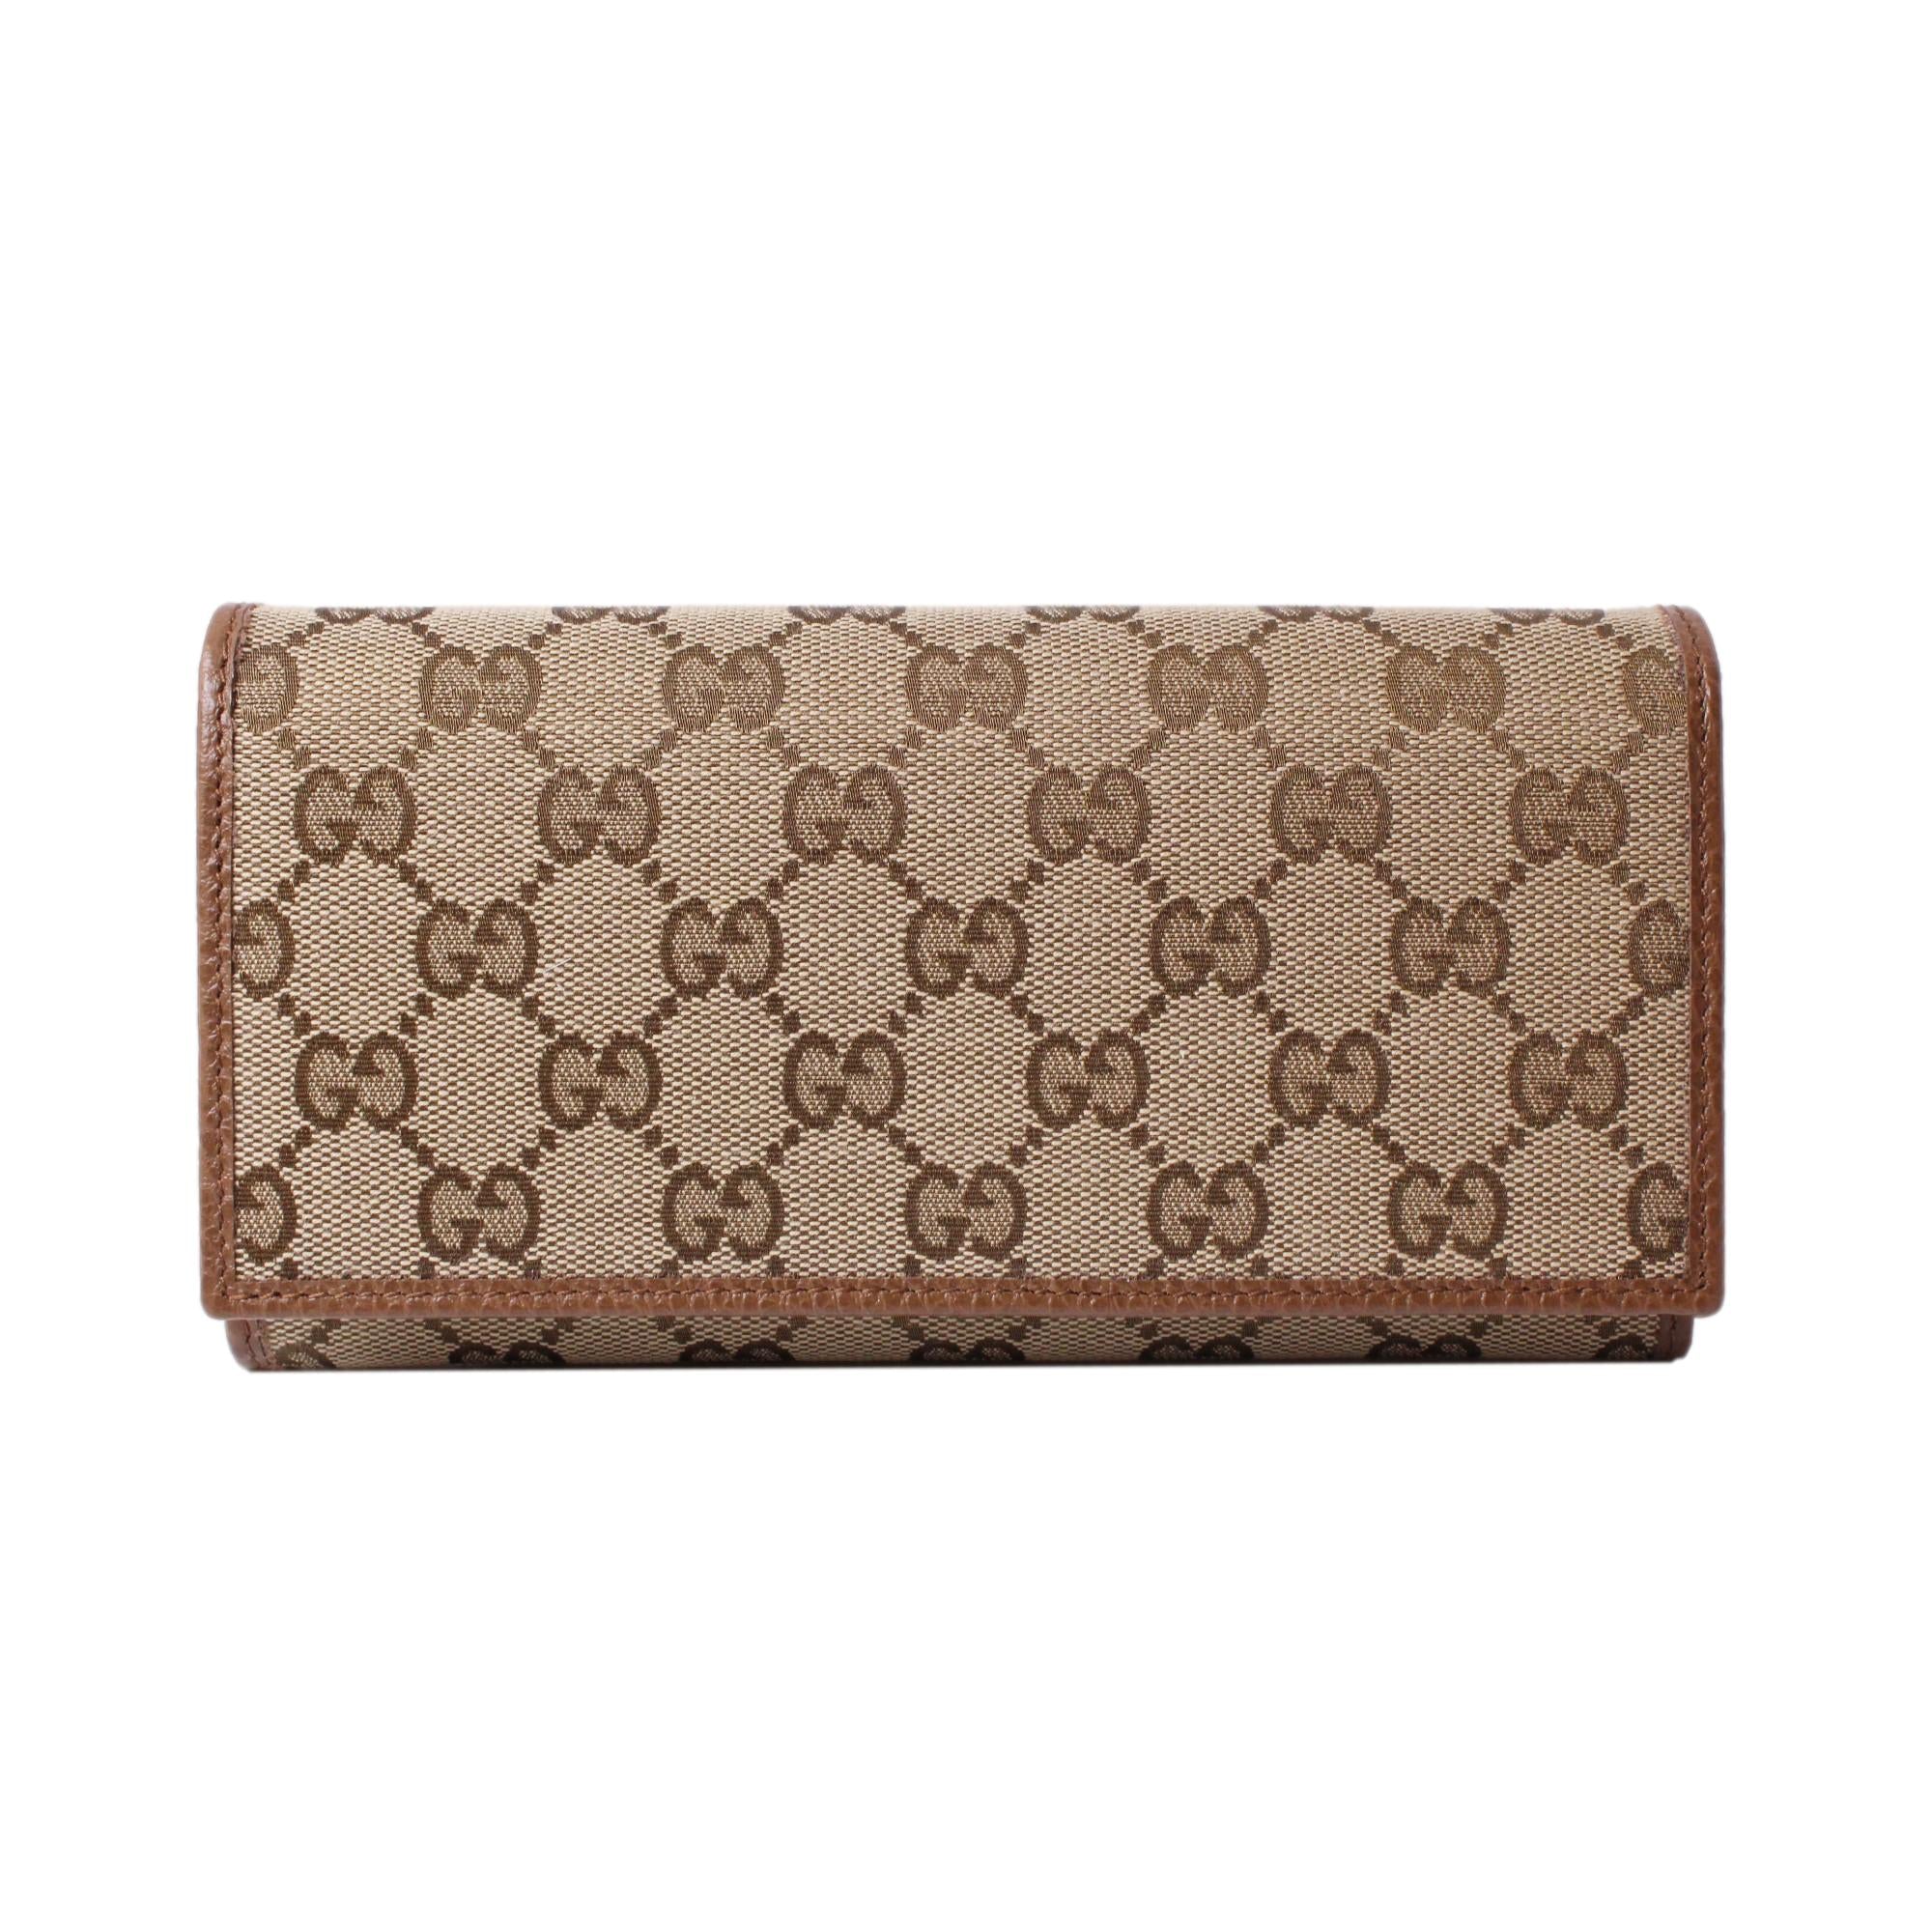 Gucci Original Beige GG Canvas Brown Leather Trim Long Wallet - LUXURYMRKT